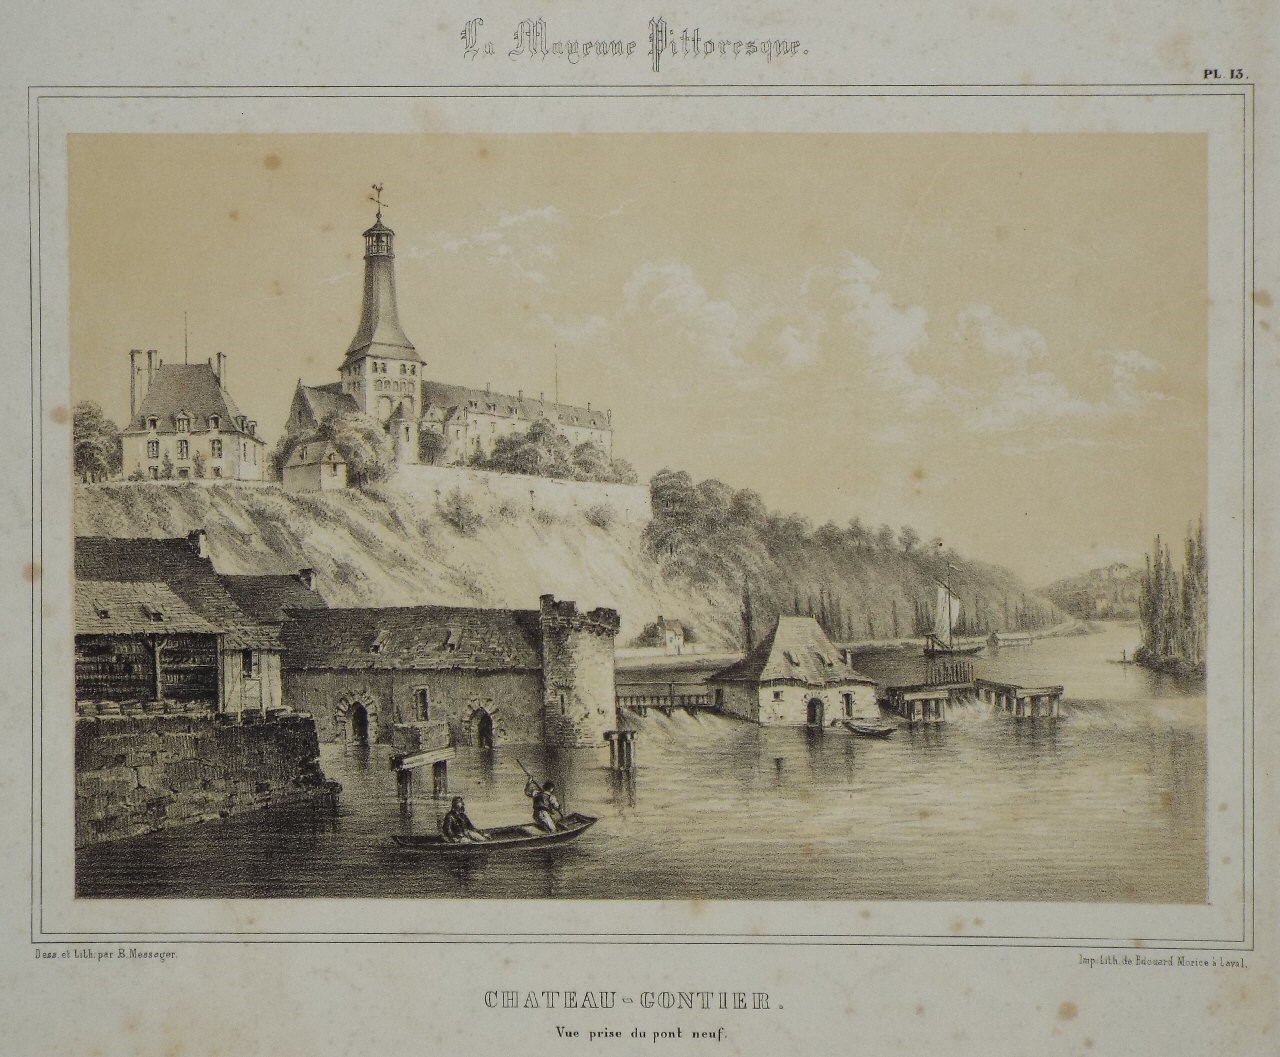 Lithograph - Chateau - Gontier. Vue prise de pont neuf. - Messager